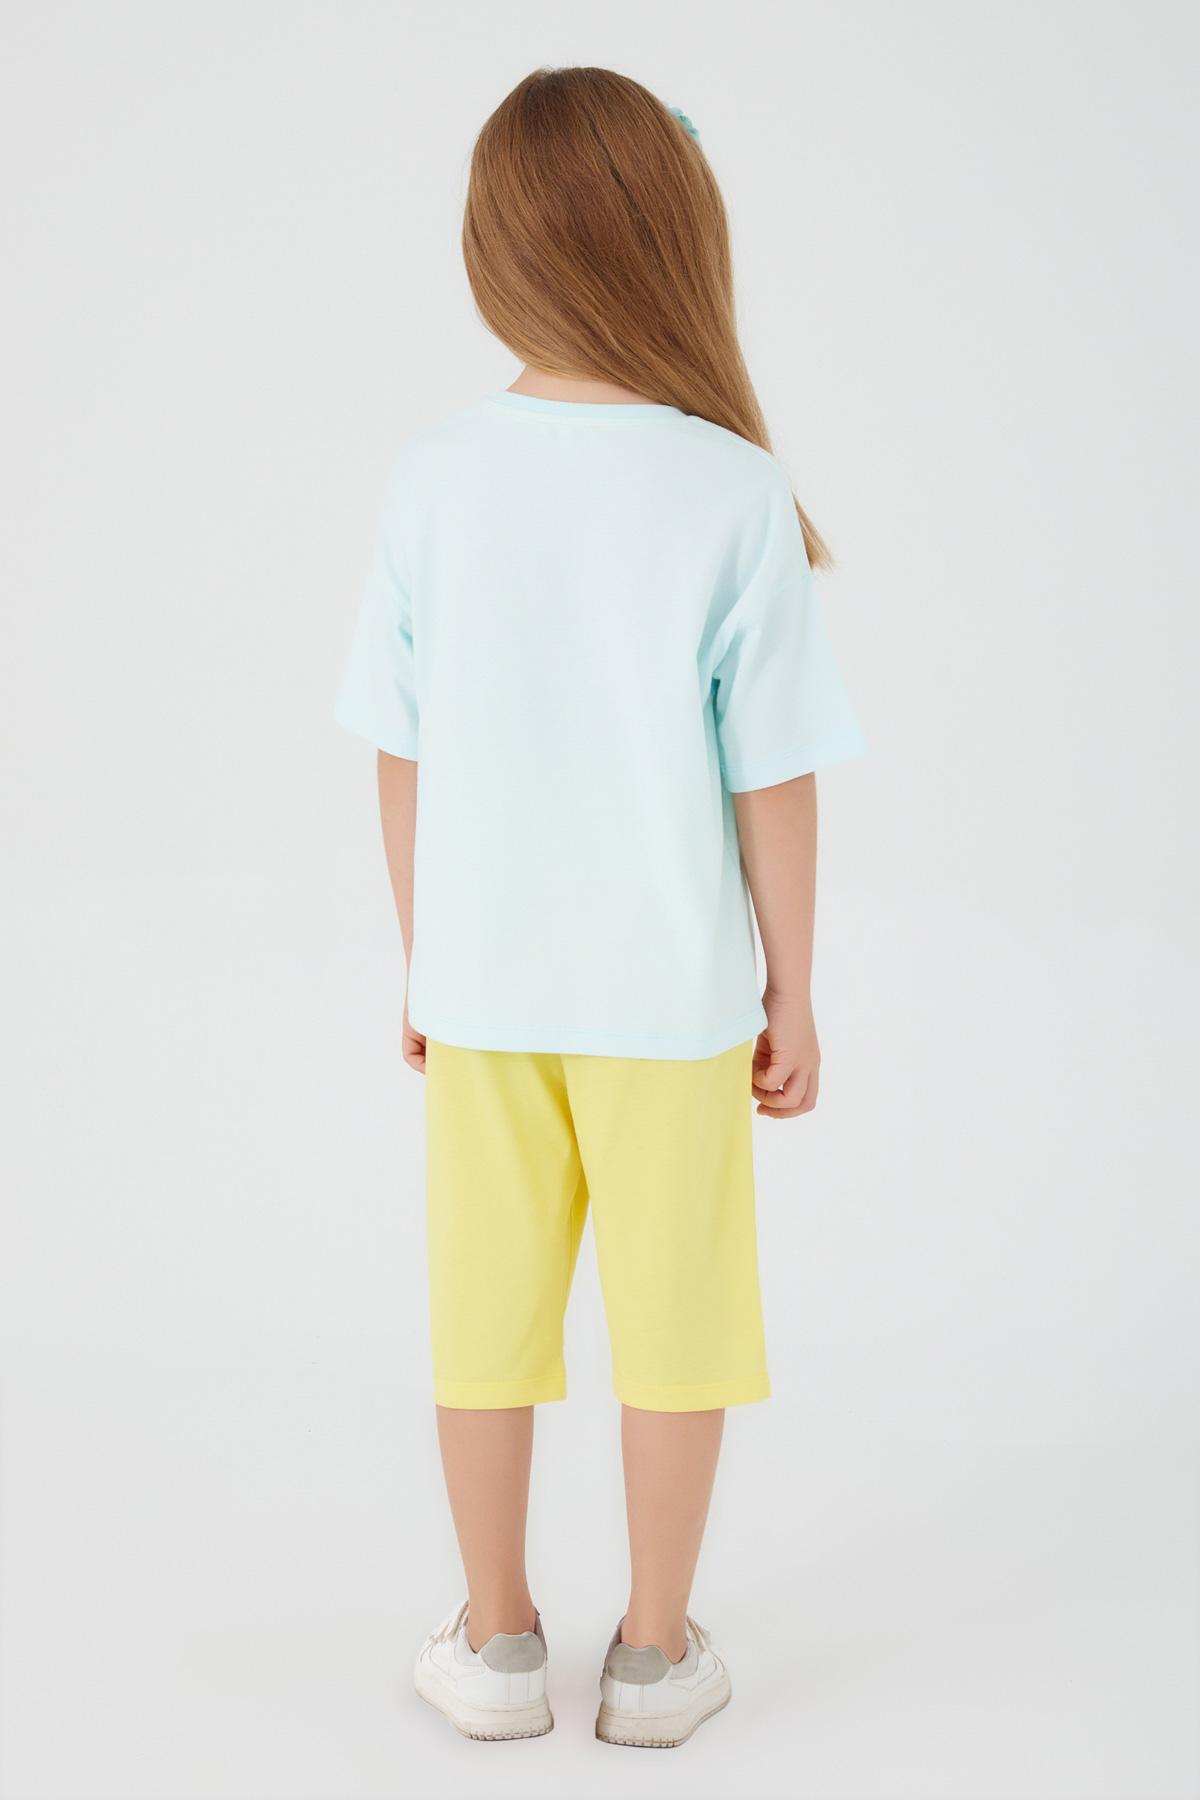 Selected image for U.S. POLO ASSN. Komplet šorc i majica za devojčice US1401-4 belo-žuti